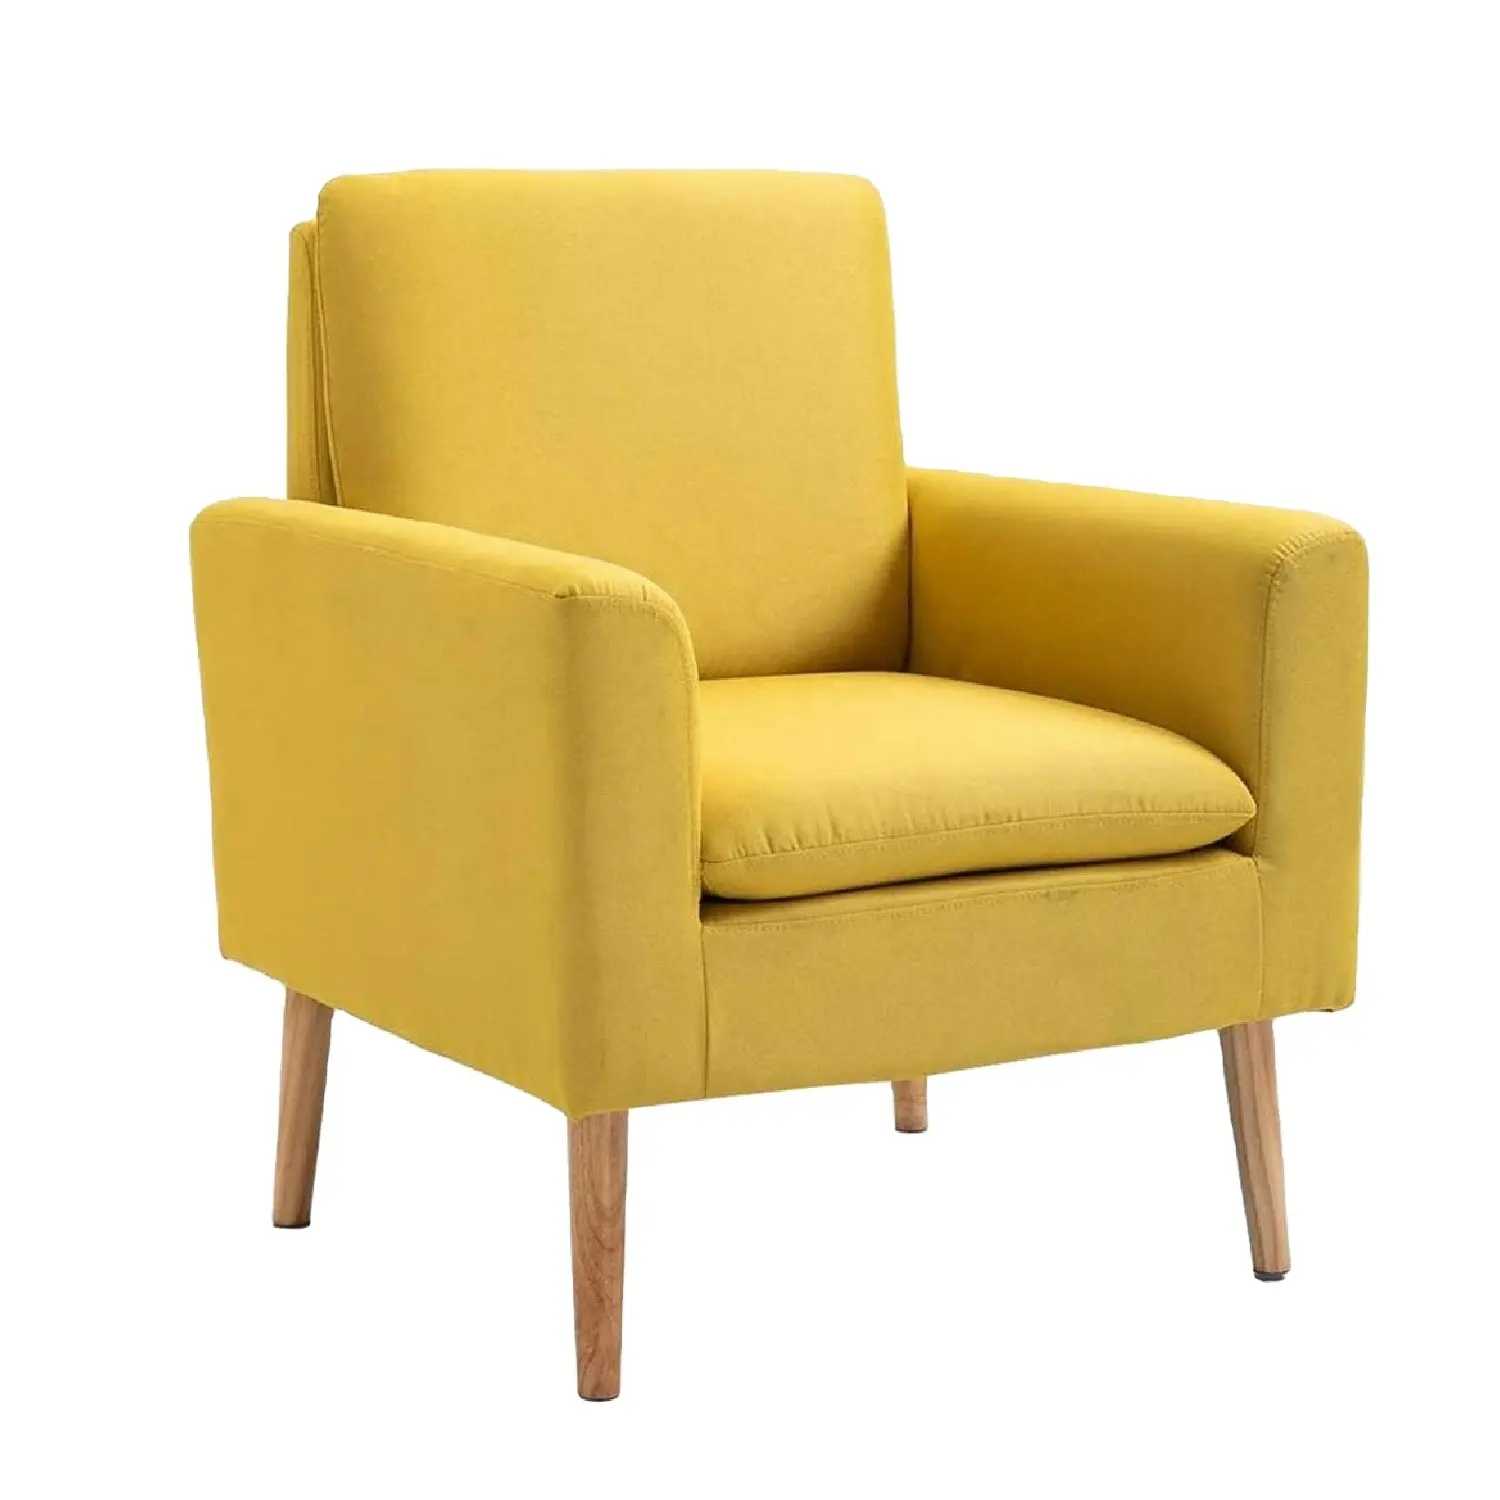 GEEKSOFA-silla moderna y cómoda para sala de estar, sillón de tela de lino para sala de estar, oficina, recepción, Bar y habitación, venta directa de fábrica, nuevo